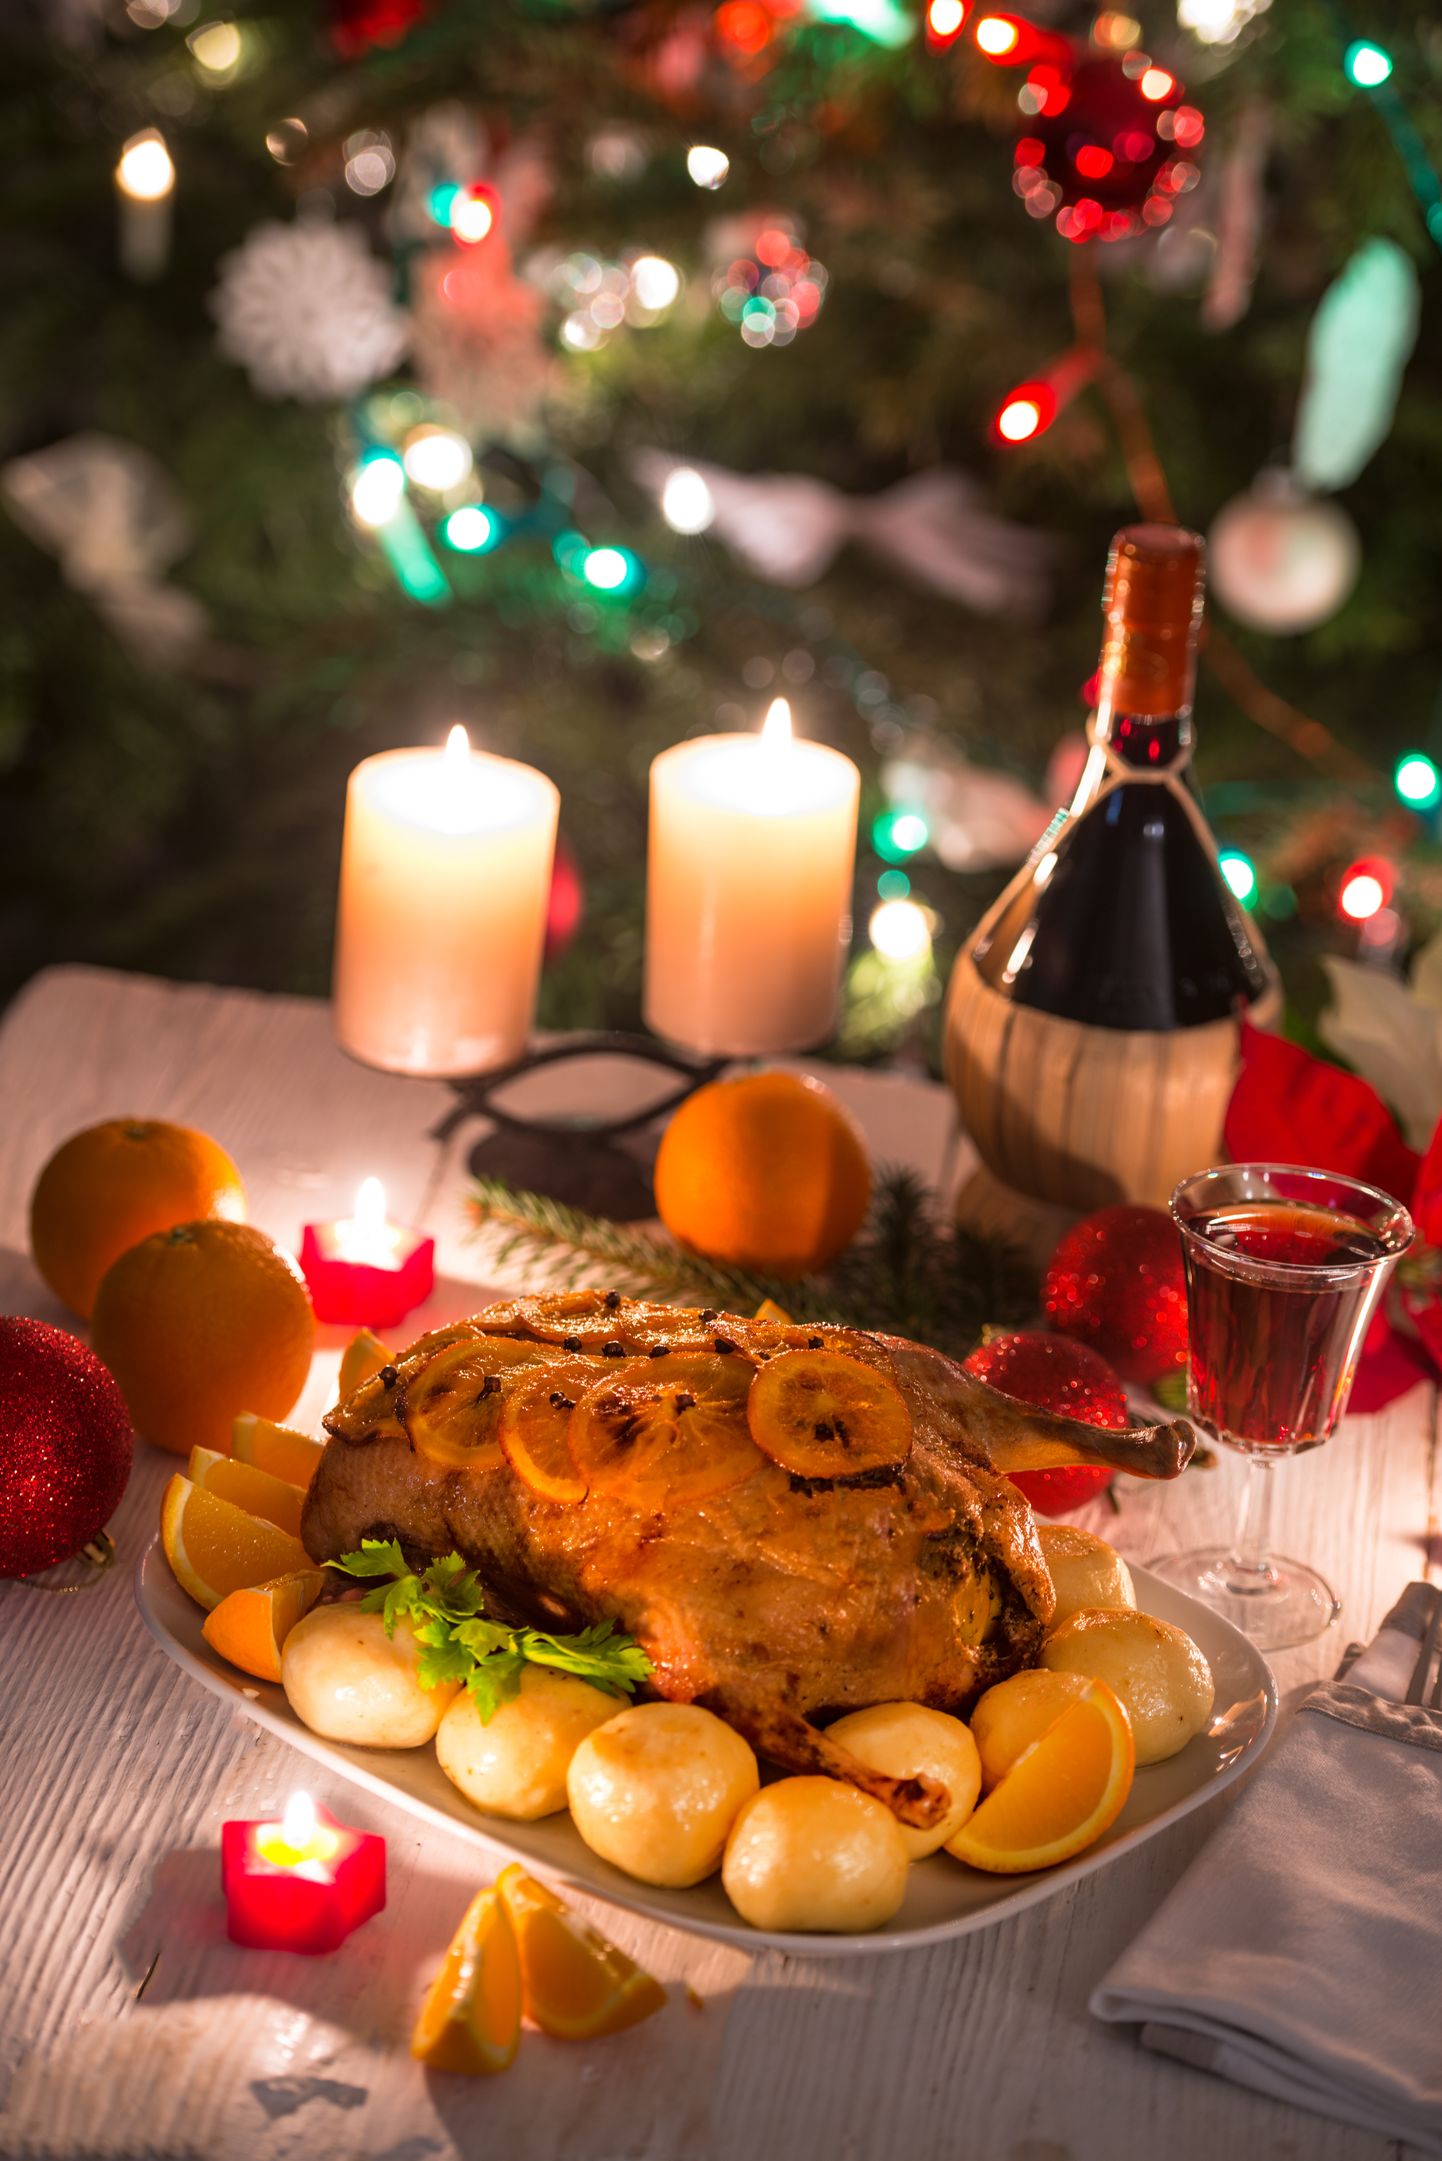 Jõululaual võib olla palju toitu, aga see ei tähenda, et kõike tuleks süüa.